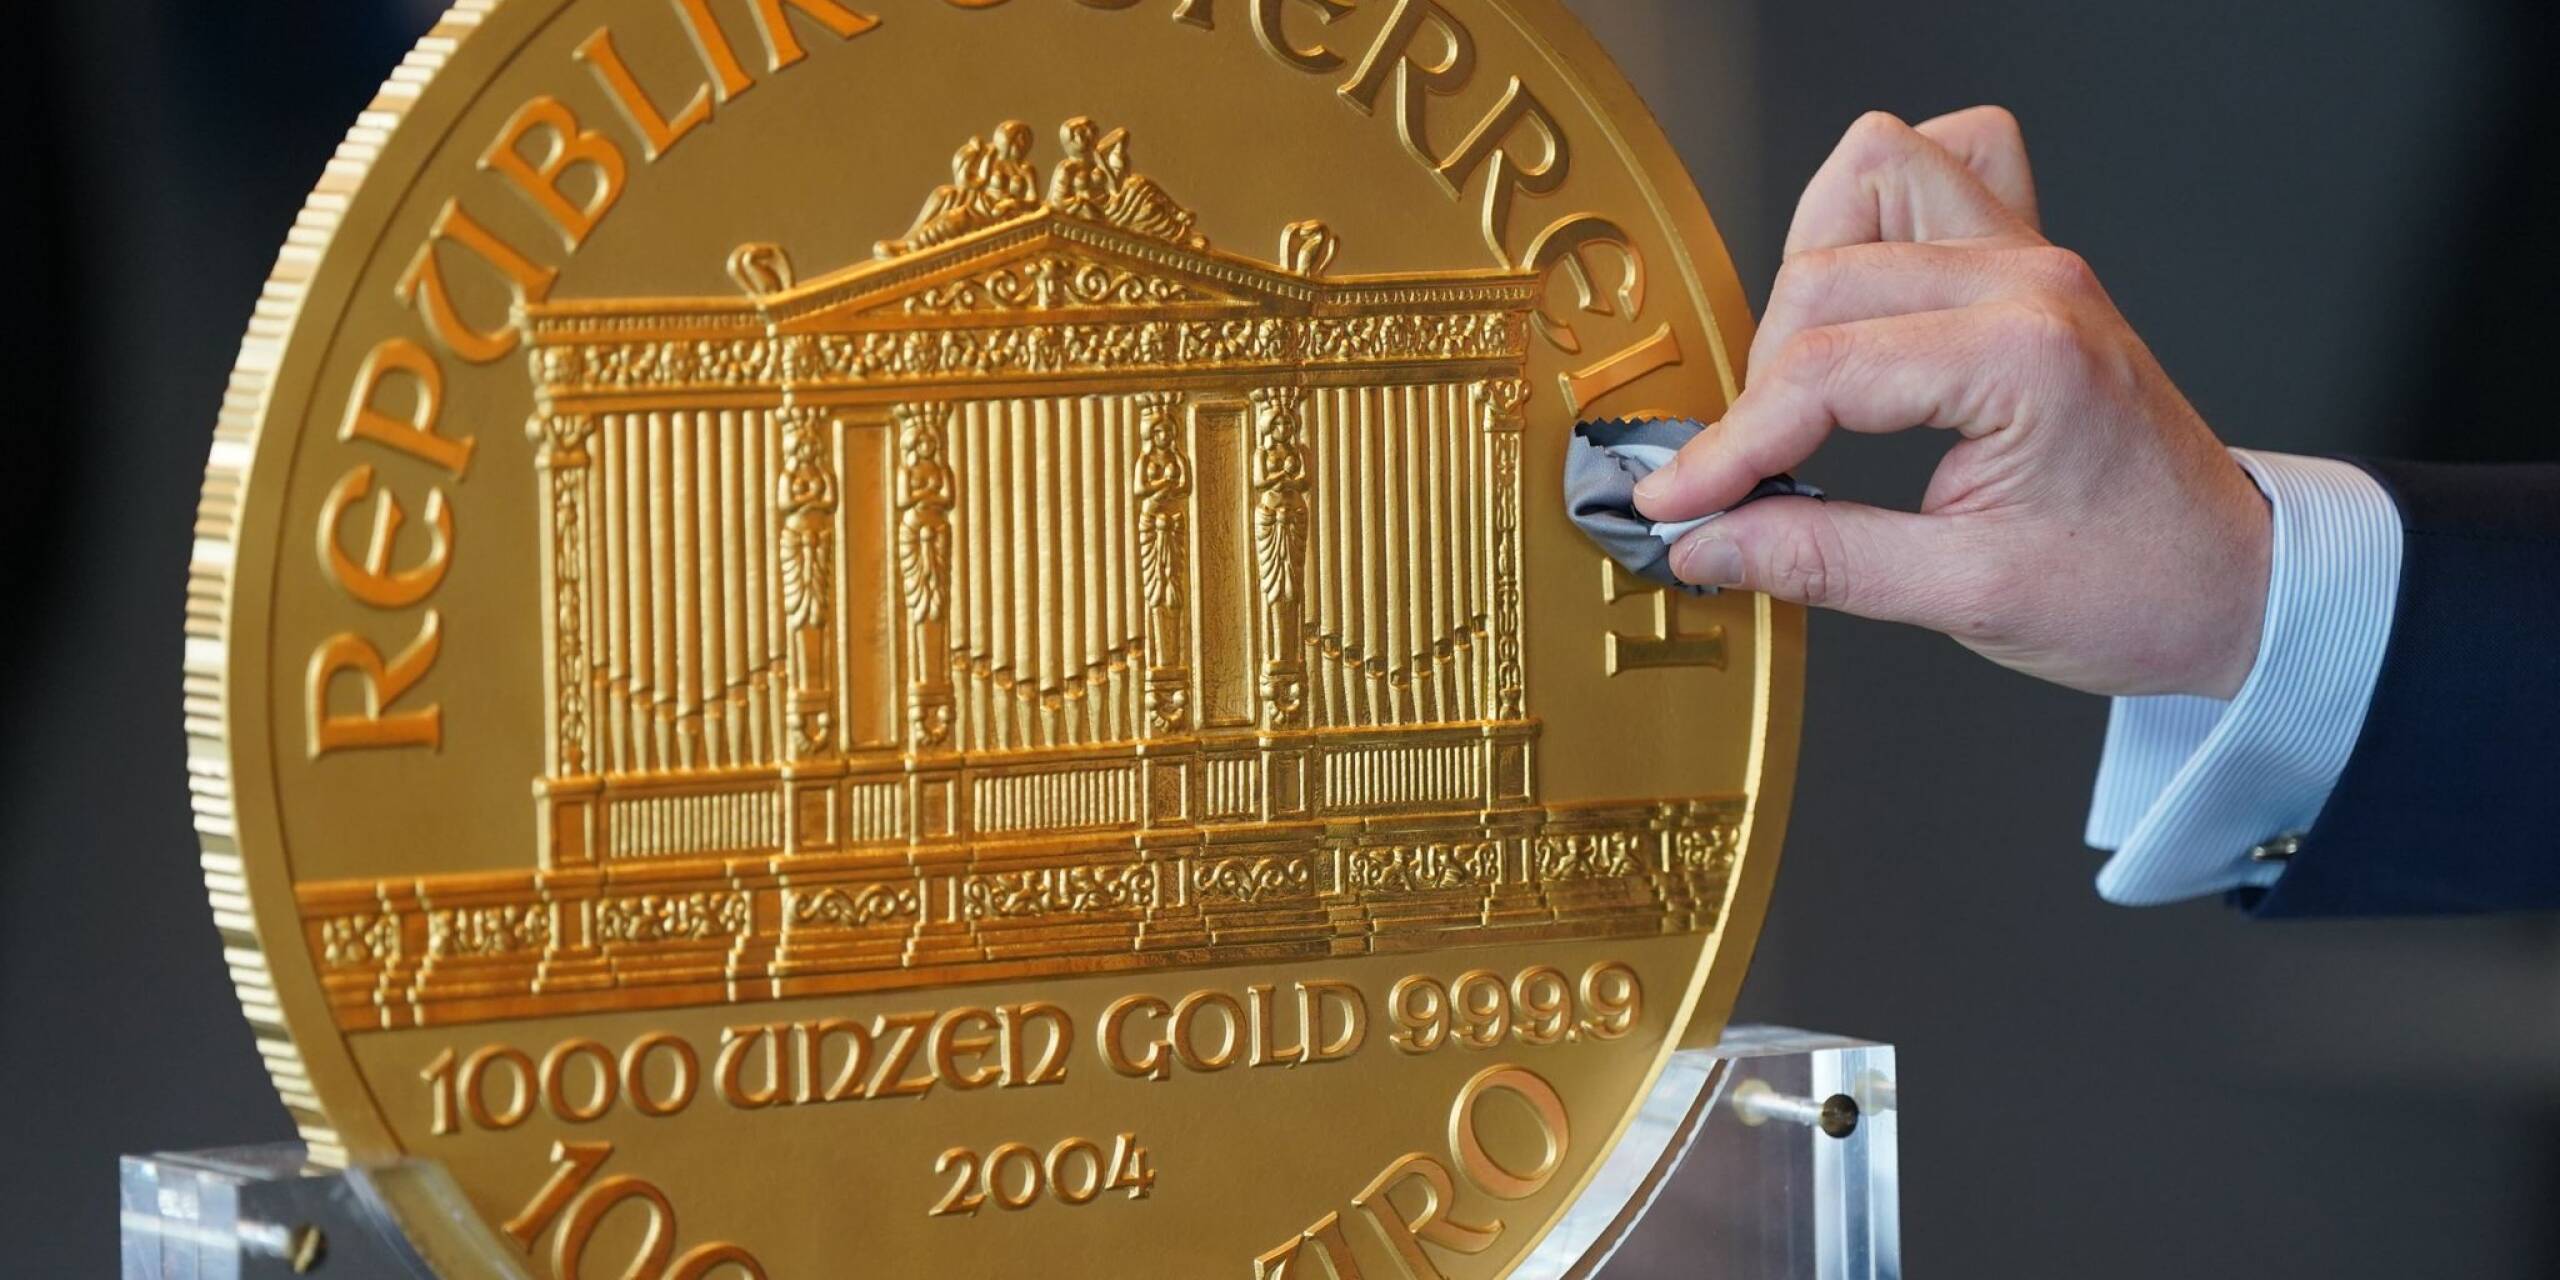 Eine Goldmünze mit einem Materialwert von derzeit 2,2 Millionen Euro ist in Hamburg ausgestellt worden. Die Münze wiegt 31 Kilogramm und misst 37 Zentimeter im Durchmesser, wie der Edelmetallhändler pro aurum mitteilte. Weltweit gibt es den Angaben zufolge lediglich 15 Stück davon.